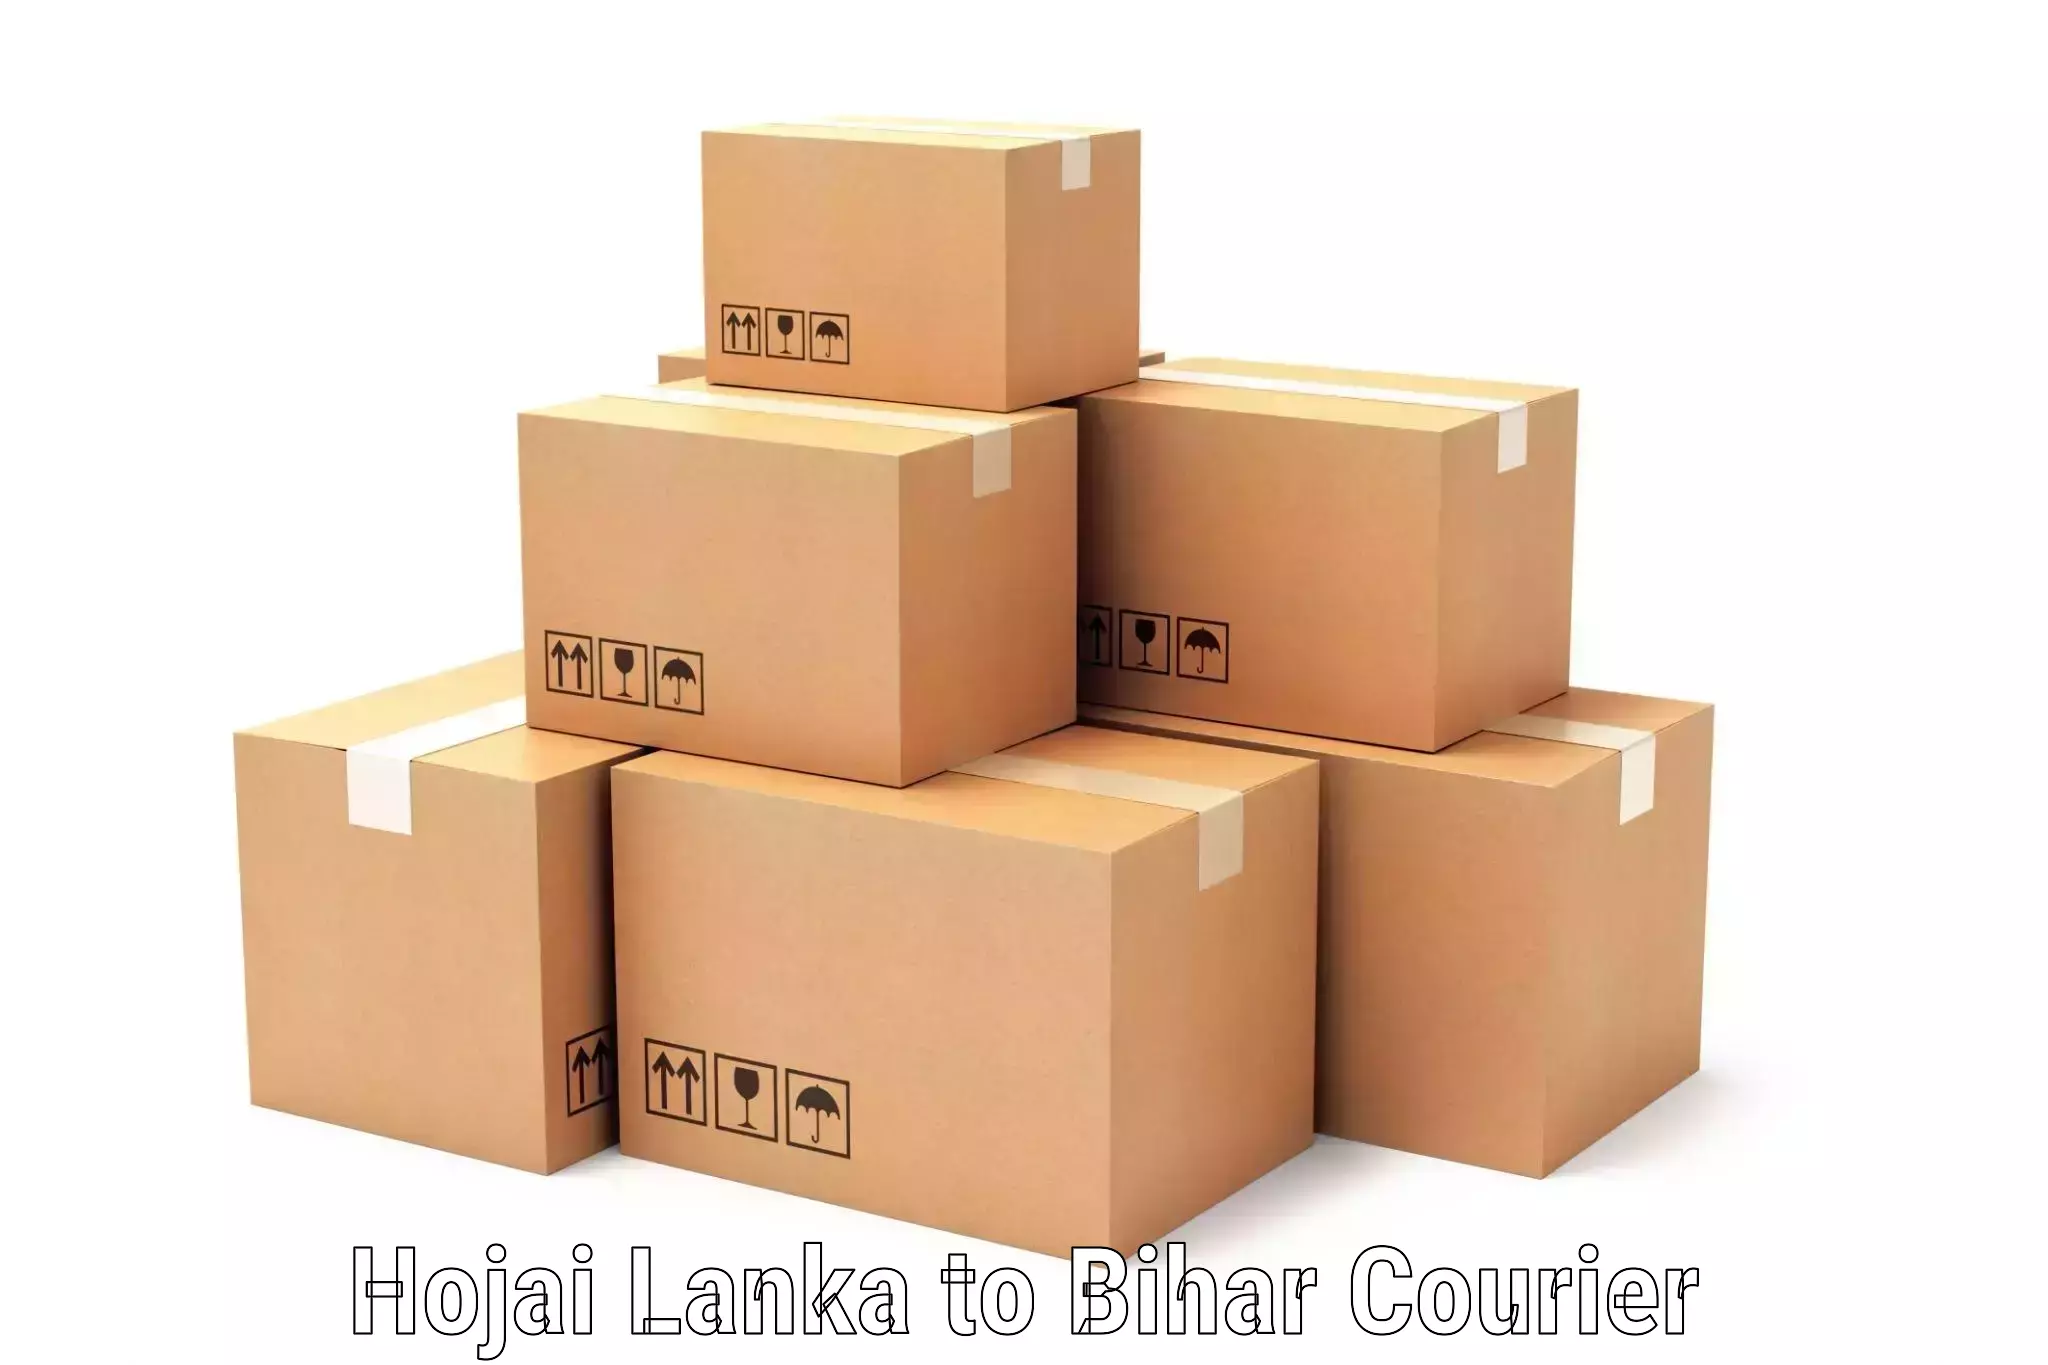 Multi-service courier options Hojai Lanka to Rajgir